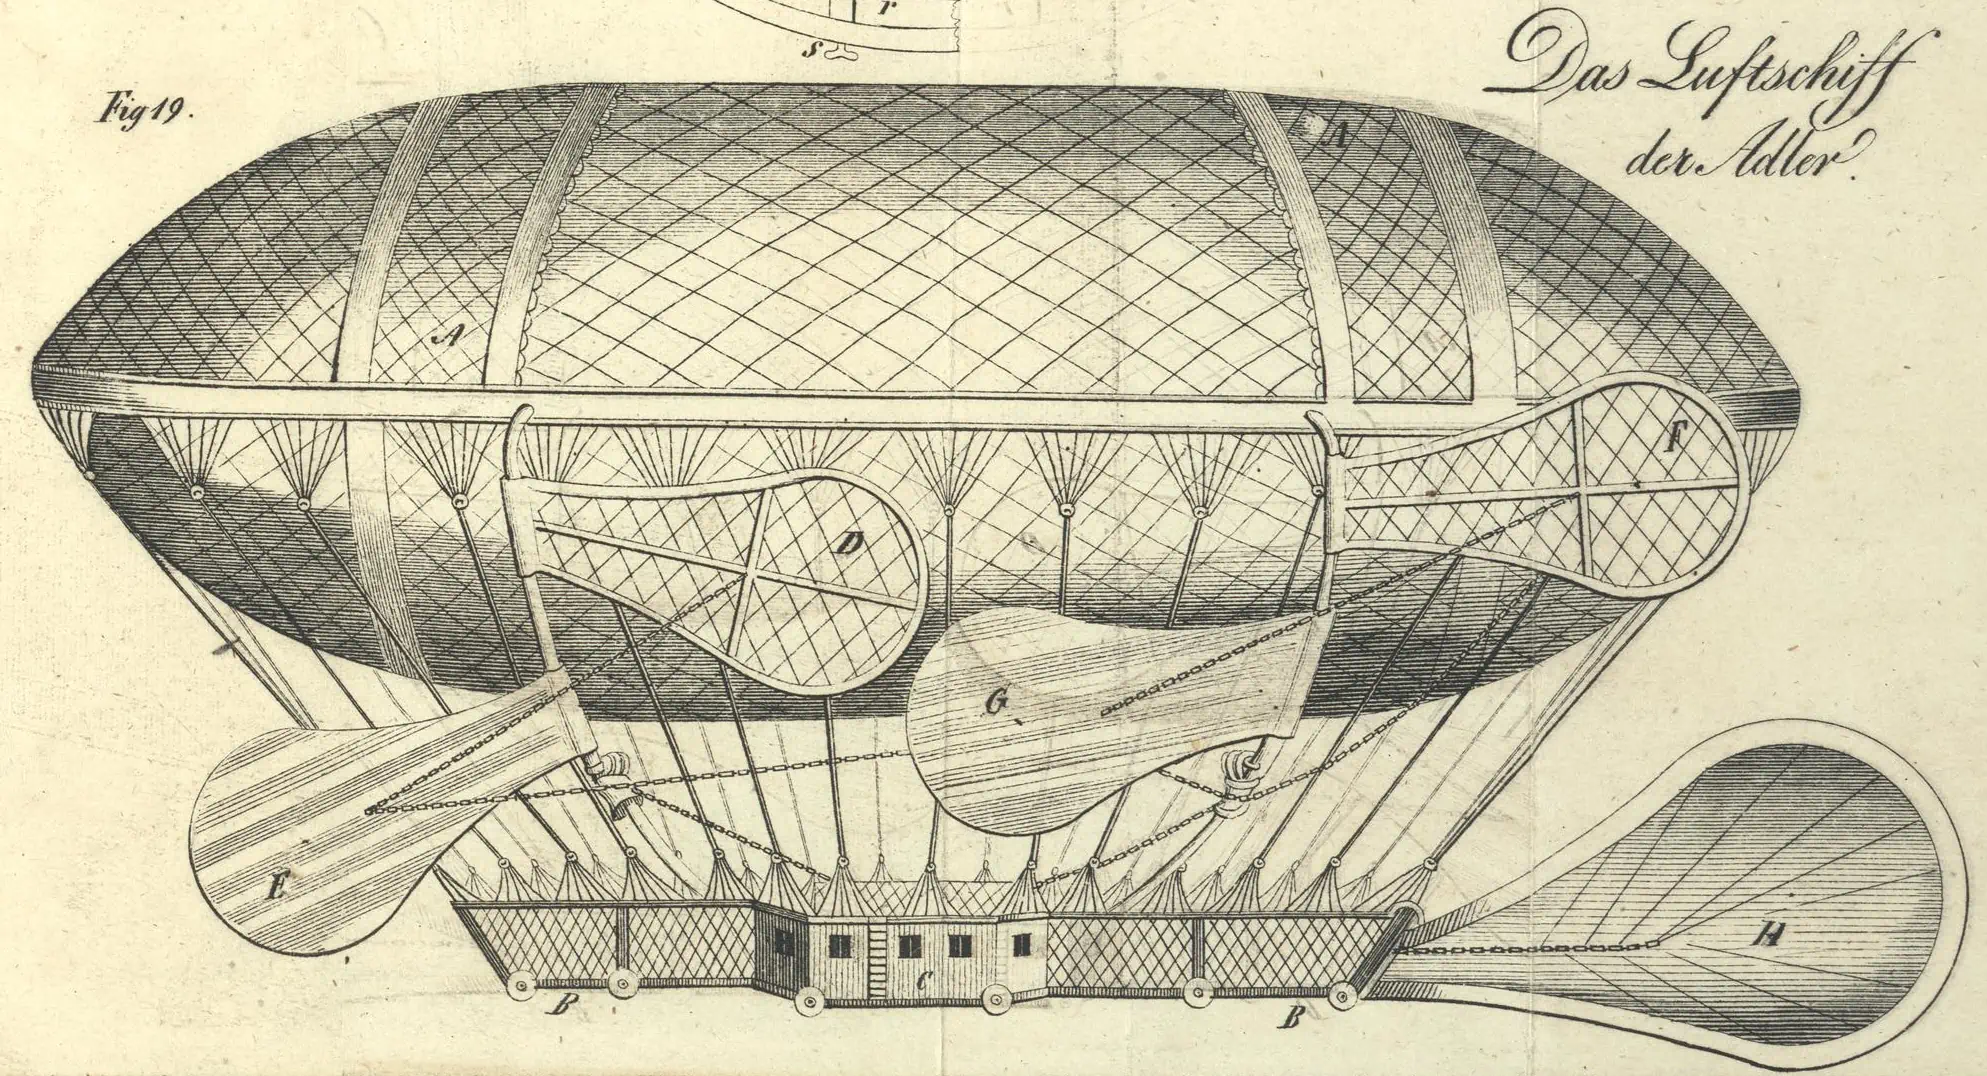 Zu sehen ist eine Zeichnung mit dem Titel „Das Luftschiff der Adler“ aus dem Polytechnischen Journal des Jahres 1836.